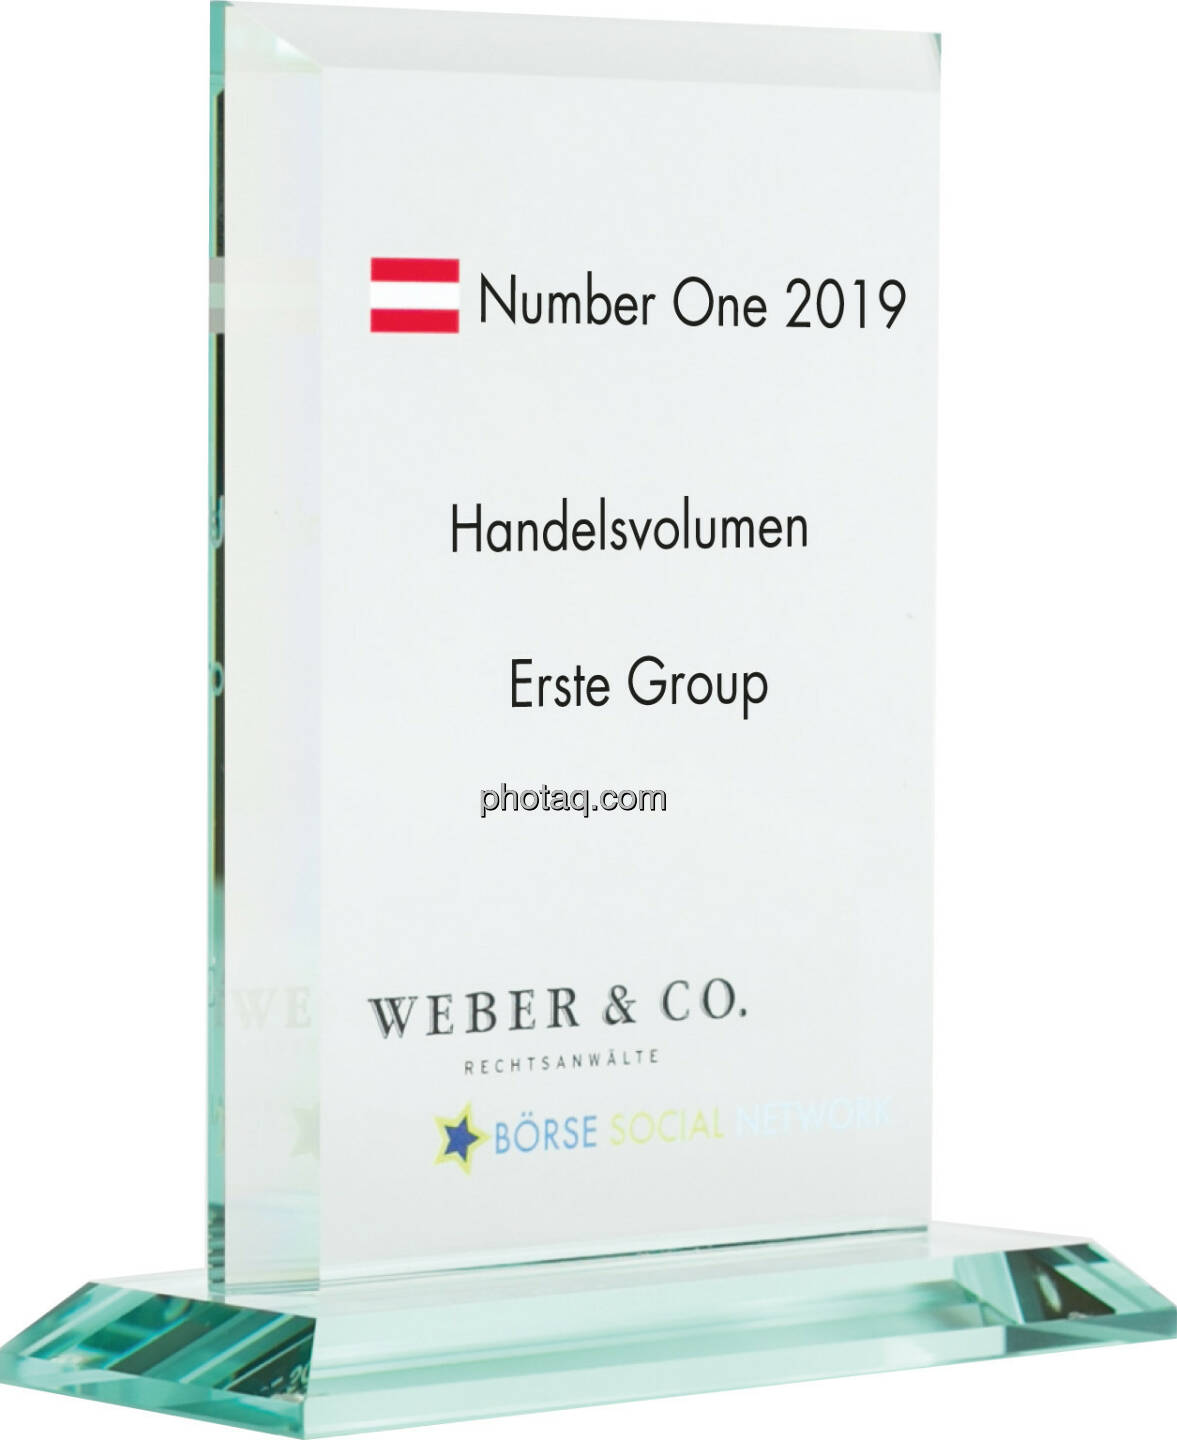 Number One Awards 2019 - Handelsvolumen Erste Group